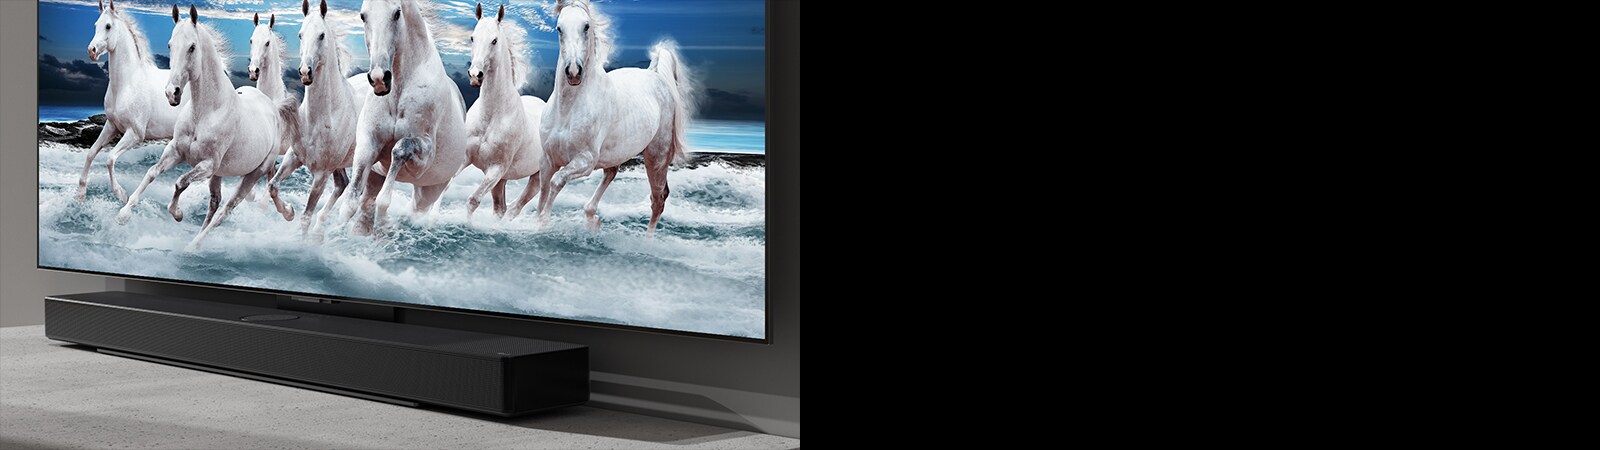 Loa Sound Bar và TV được đặt trên bàn trắng và 7 con ngựa trắng được hiển thị trên TV.